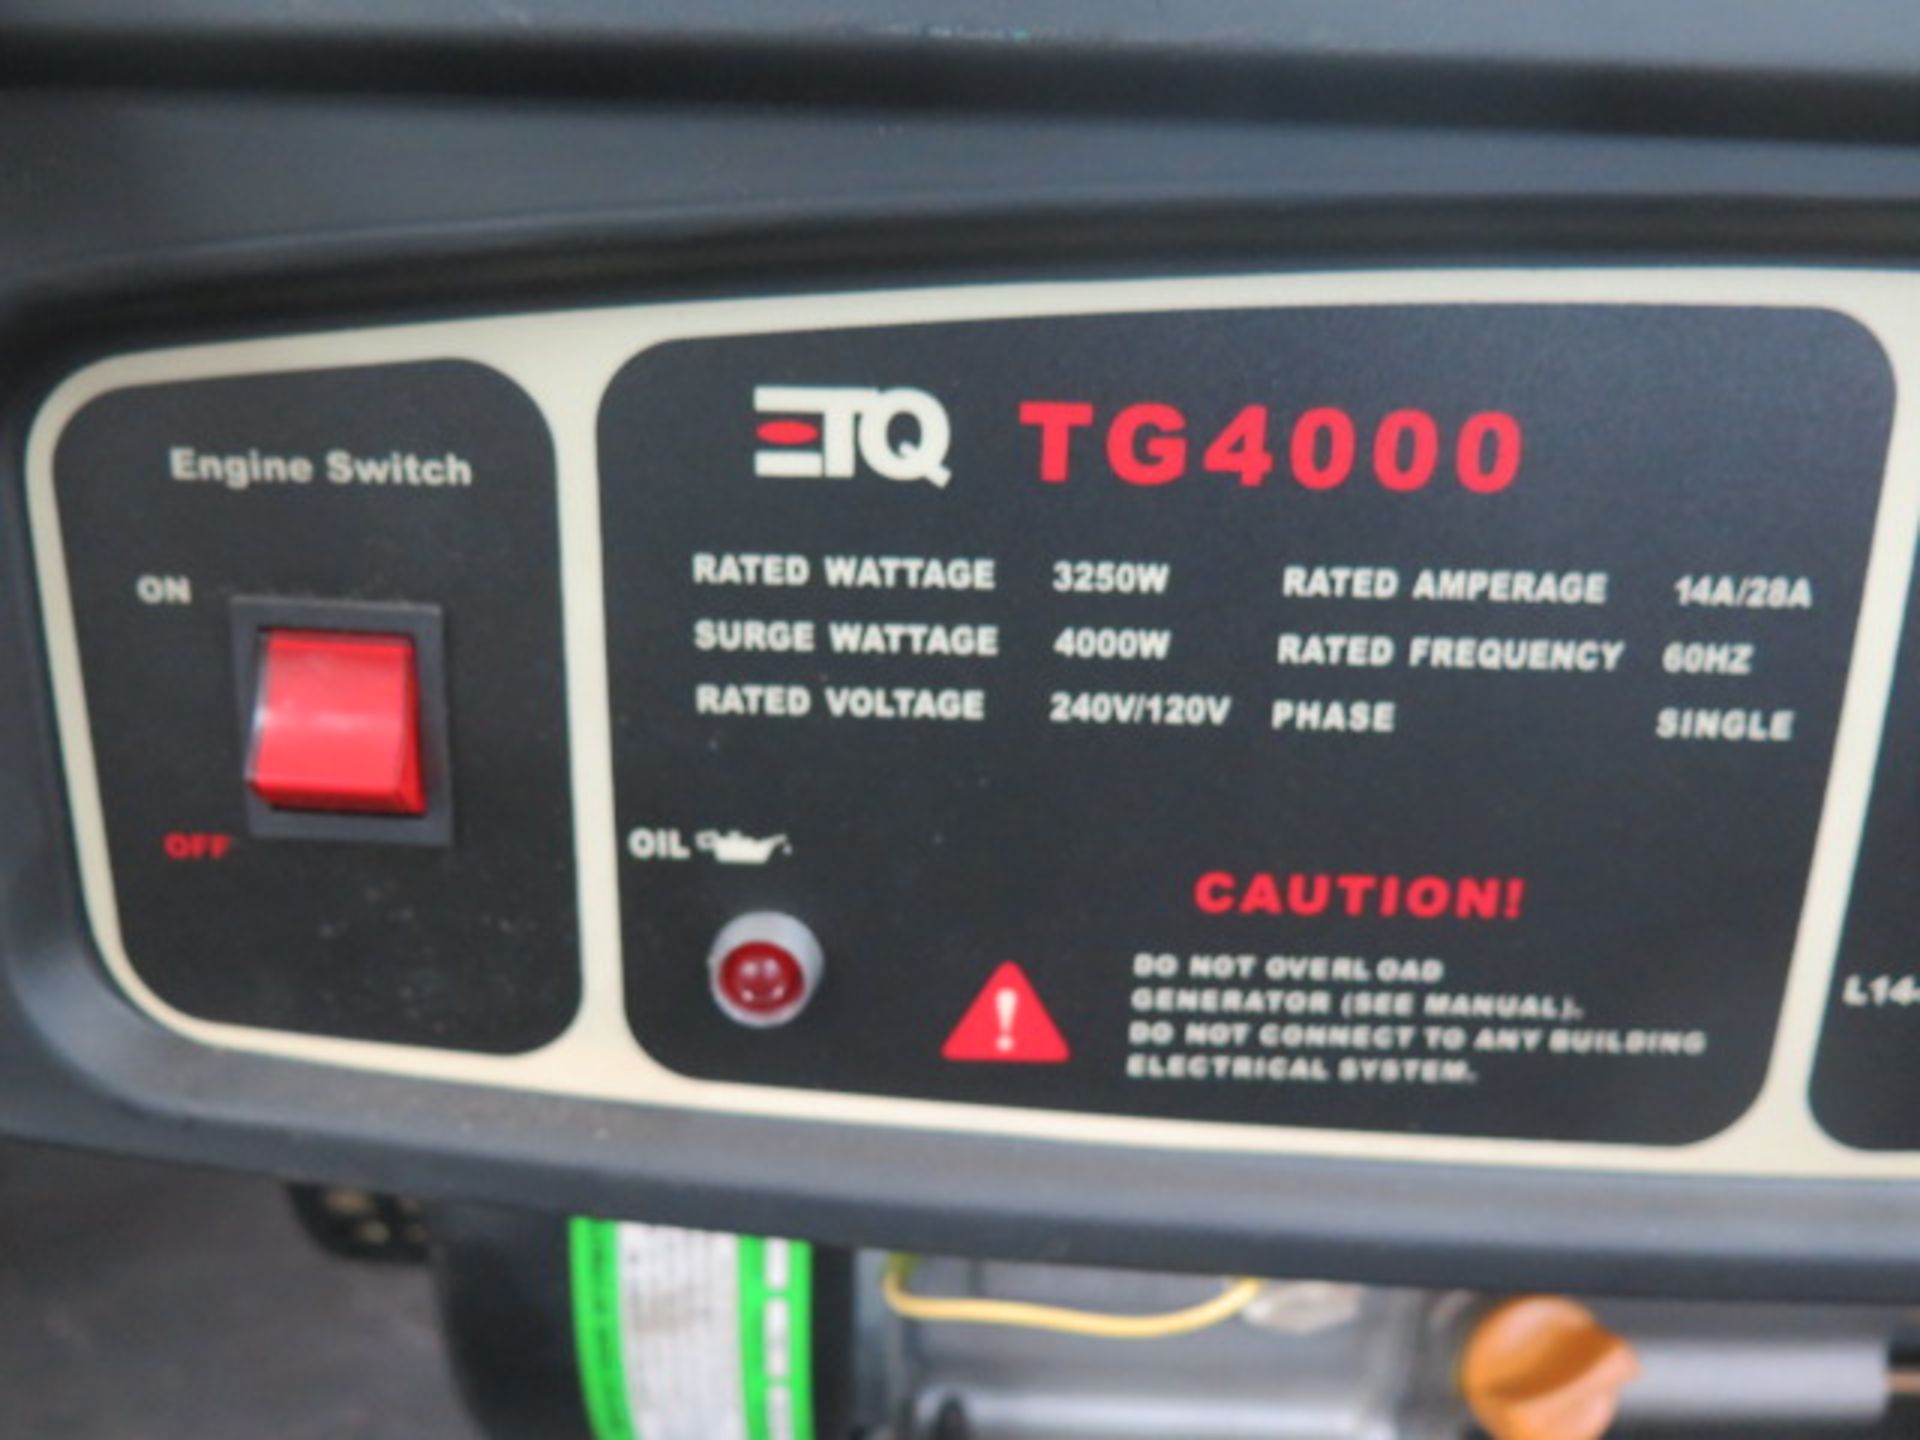 ETQ TG4000 4000 Watt Gas Powered Generator - Image 4 of 5